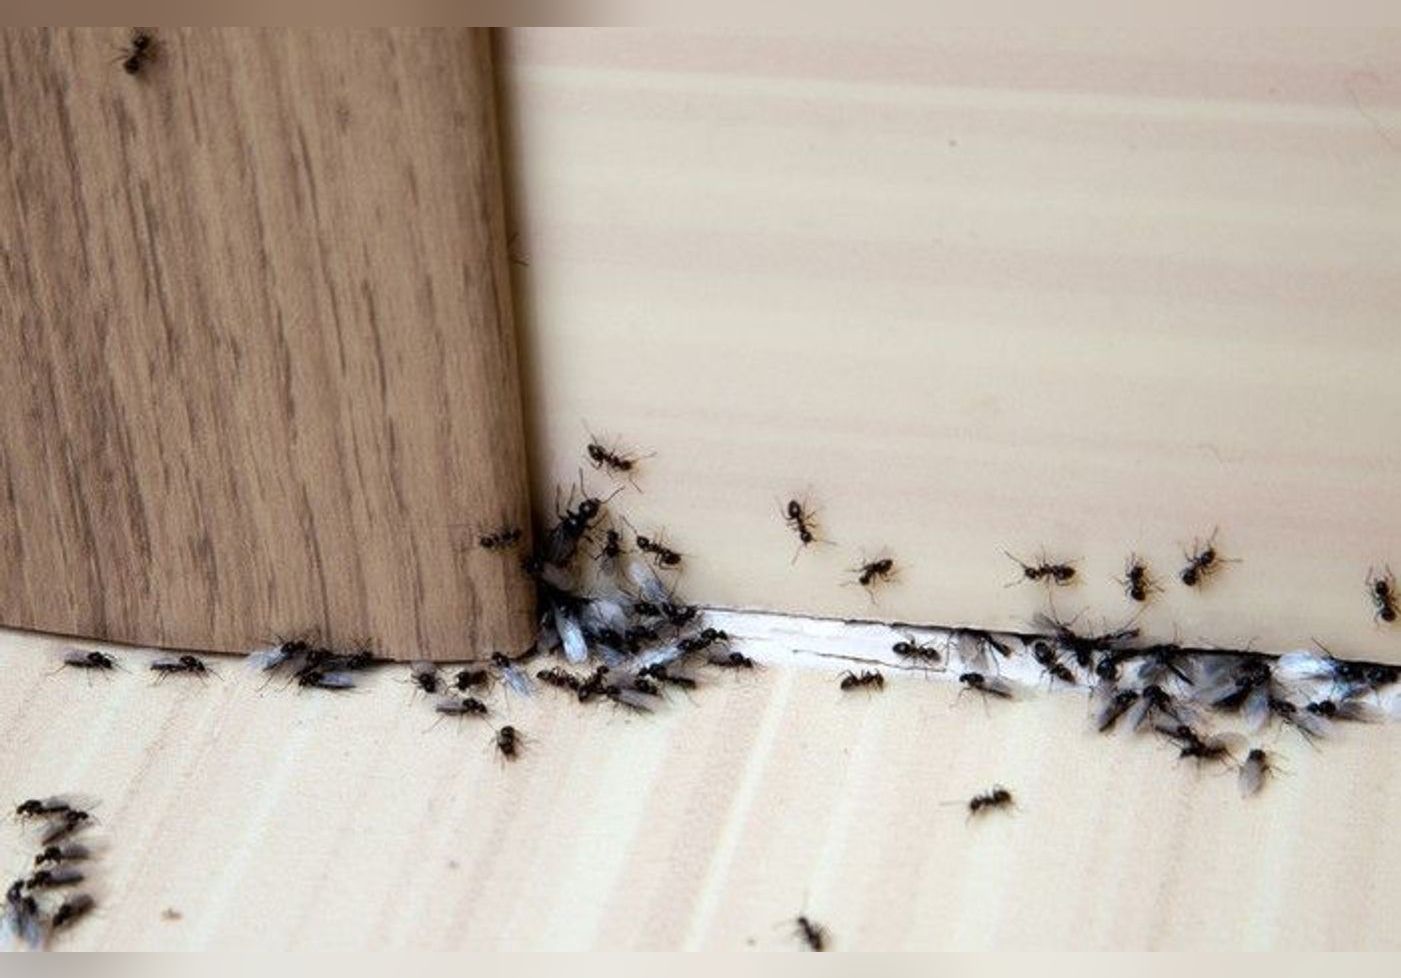 كيف تتخلص من النمل في منزلك دون قتله؟ watanserb.com